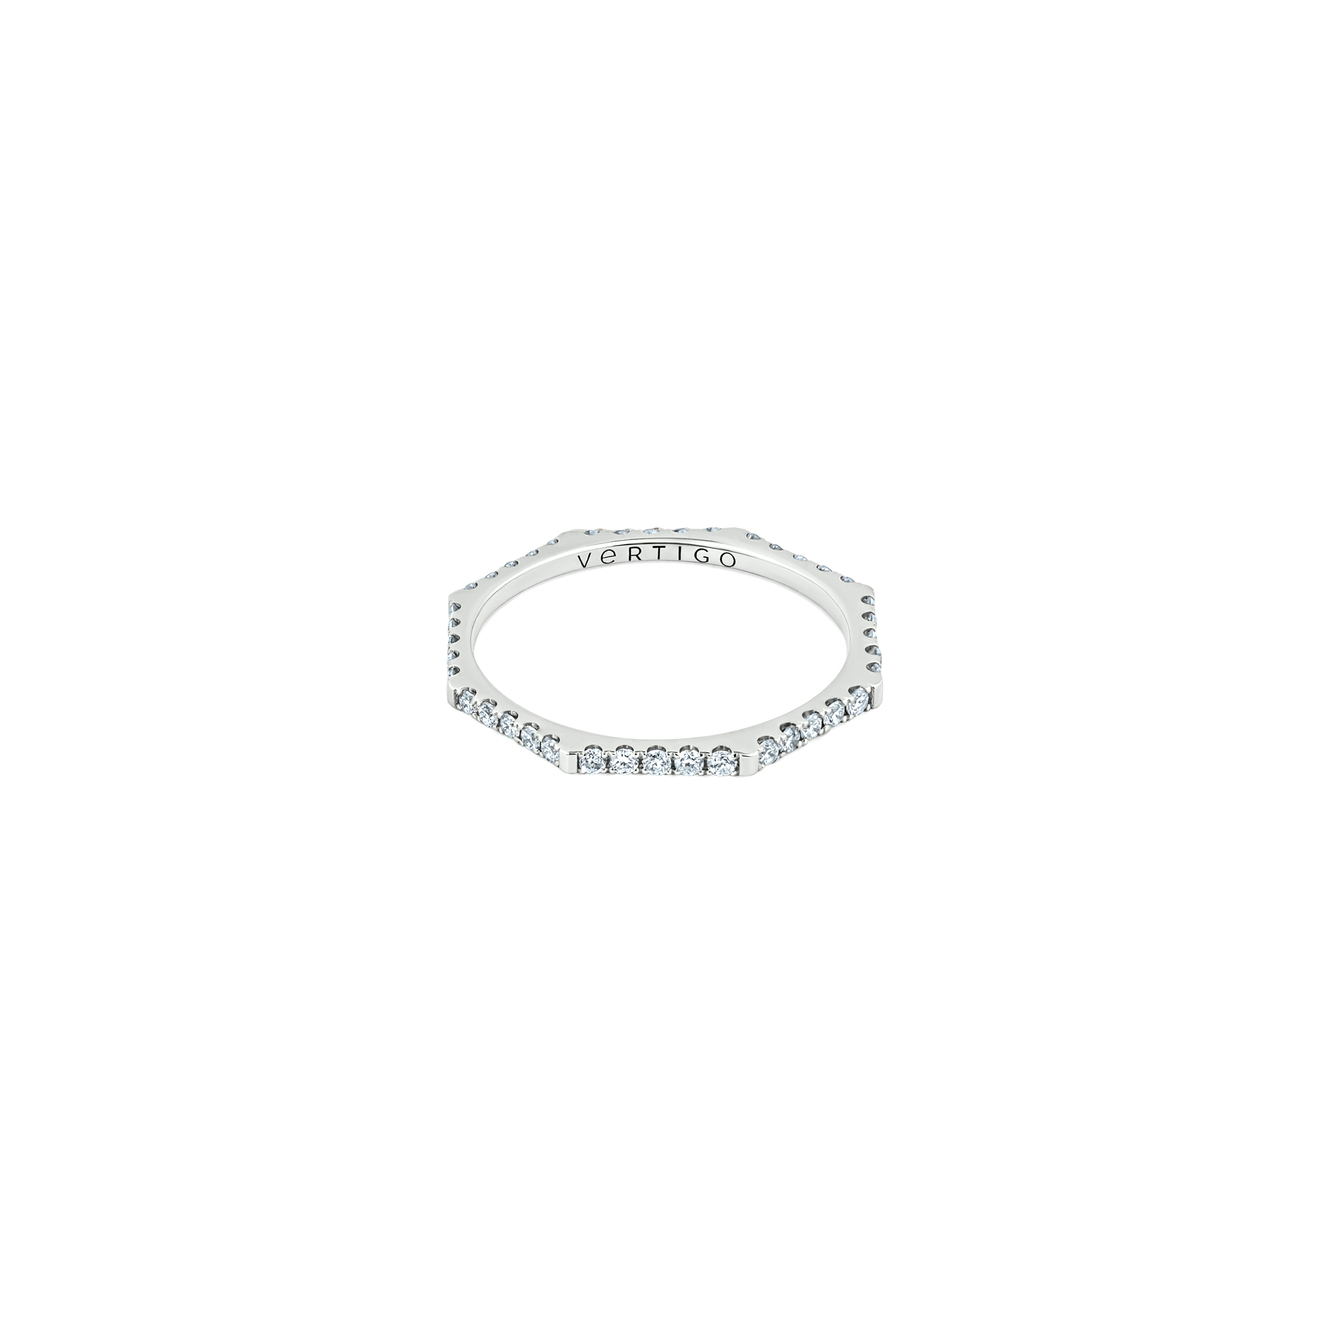 Vertigo Jewellery Lab Кольцо HEXO diamond из белого золота с дорожой из бриллиантов 35 02 тонкое кольцо из белого золота c крестом из бриллиантов